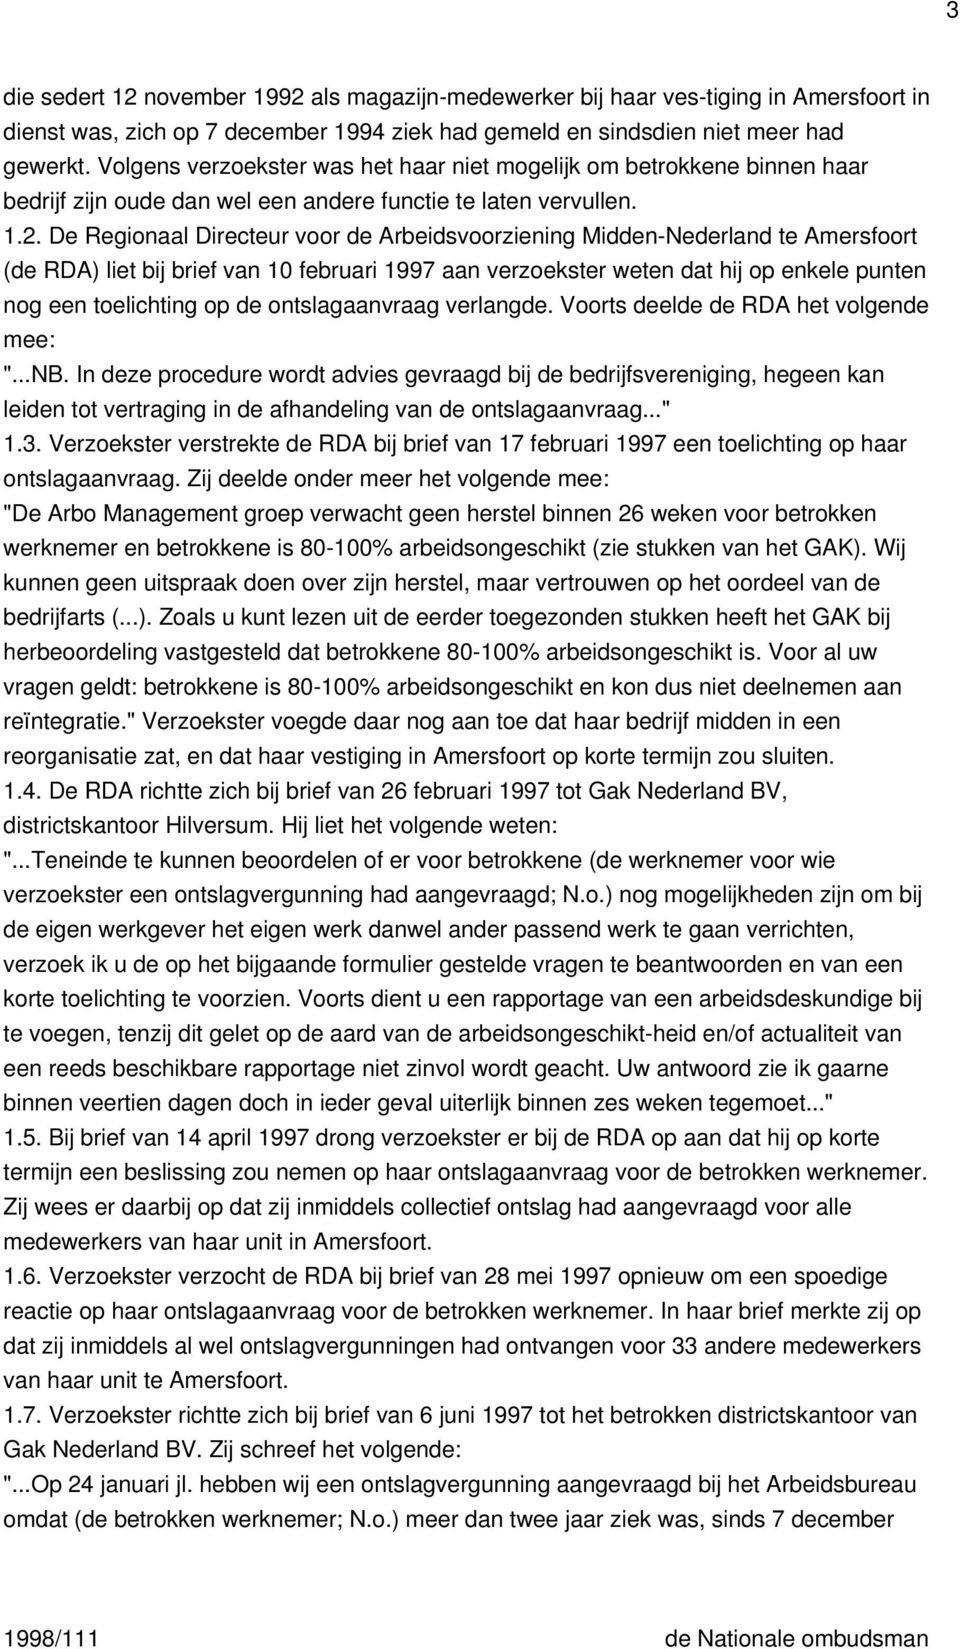 De Regionaal Directeur voor de Arbeidsvoorziening Midden-Nederland te Amersfoort (de RDA) liet bij brief van 10 februari 1997 aan verzoekster weten dat hij op enkele punten nog een toelichting op de